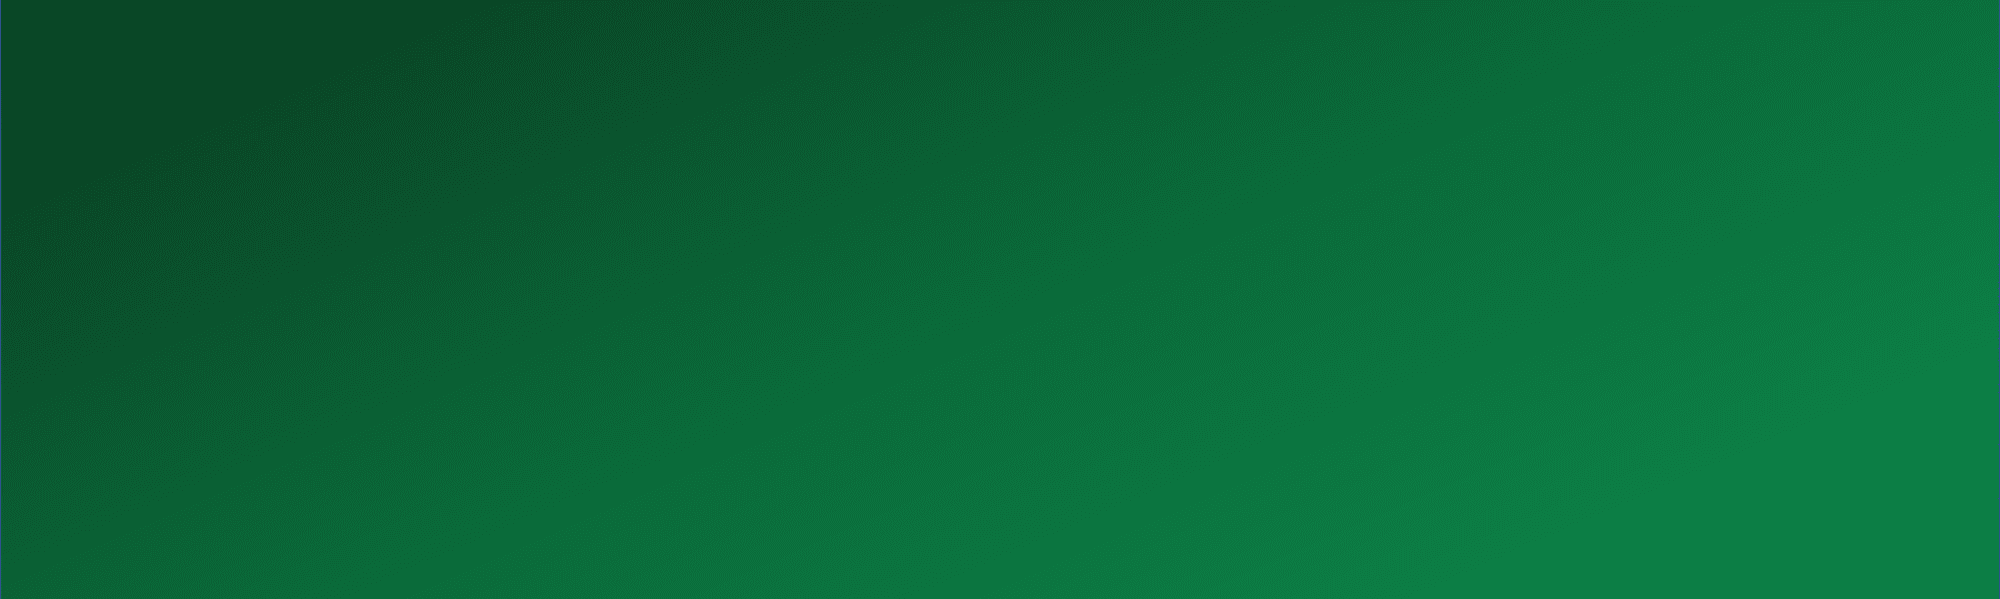 Gradient green background